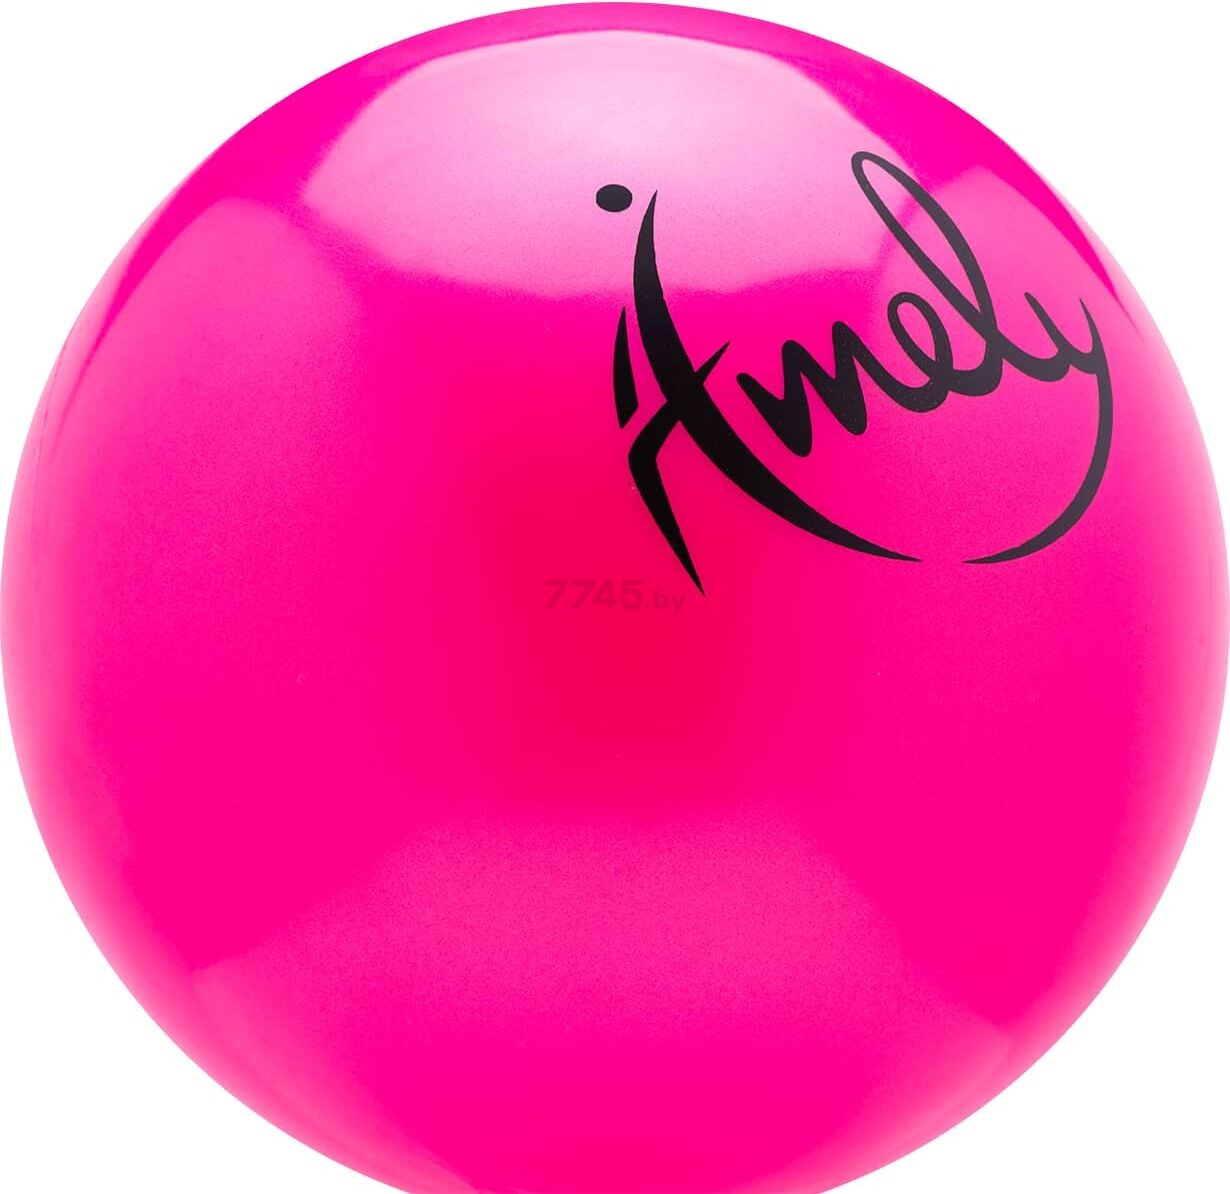 Мяч для художественной гимнастики AMELY розовый (AGB-201-15-PI) - Фото 2